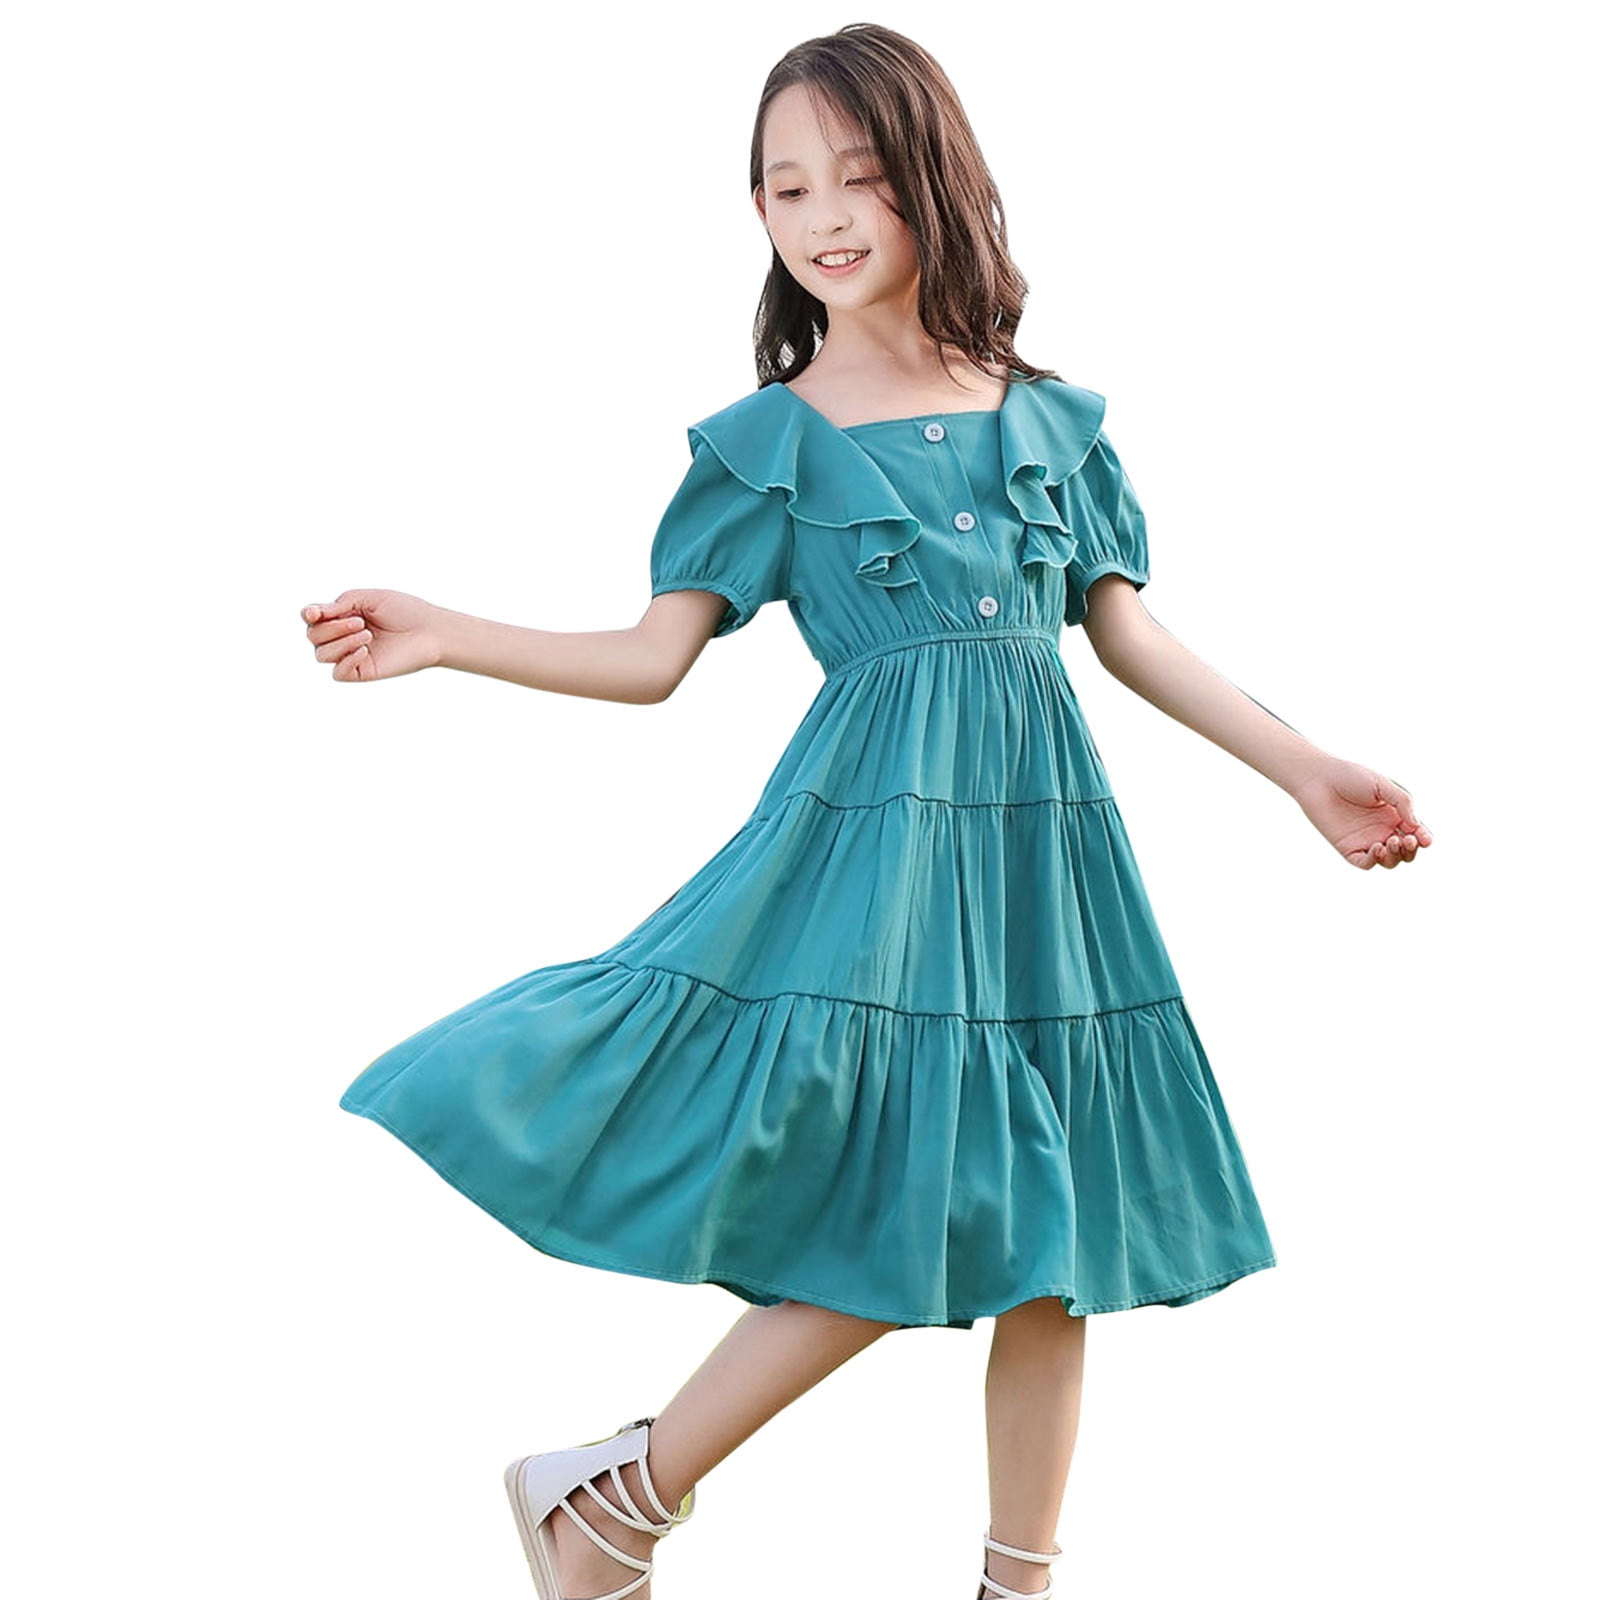 New Short Dress for Girls 2021 | New Dress Design 2021 for Girl Short | Short  Dress for Girls 2021 - YouTube